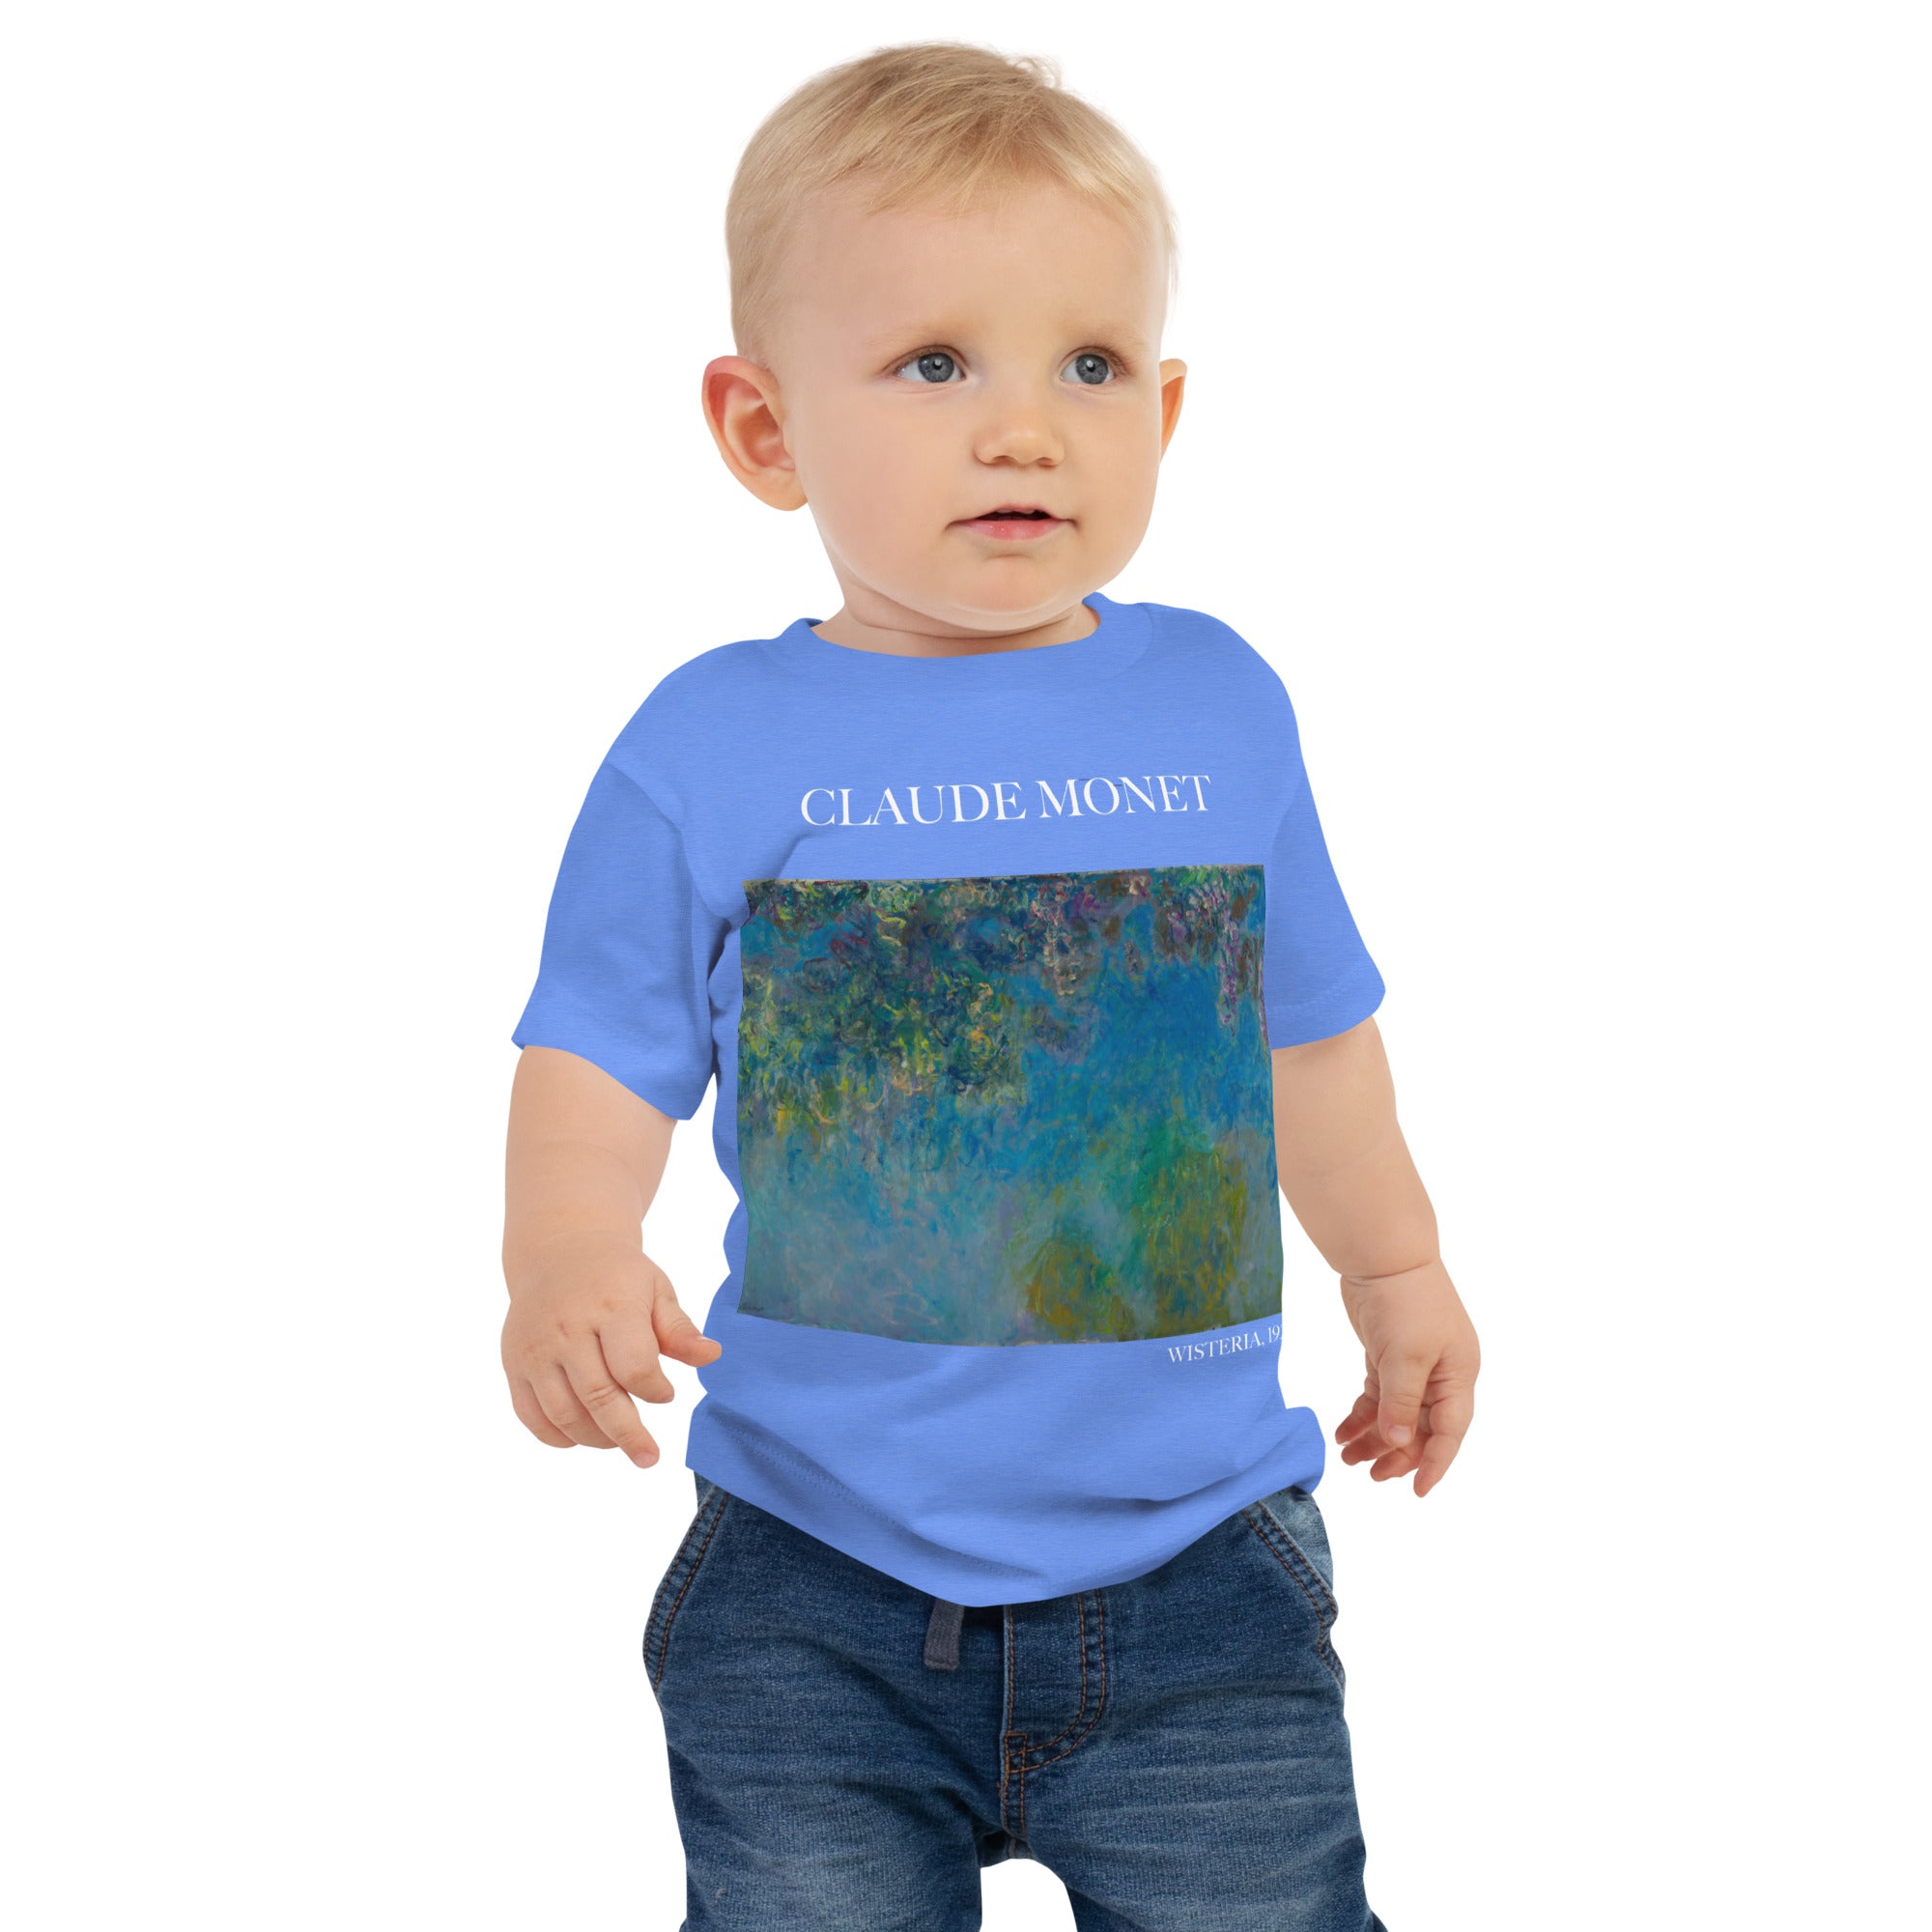 Claude Monet 'Wisteria' Famous Painting Baby Staple T-Shirt | Premium Baby Art Tee